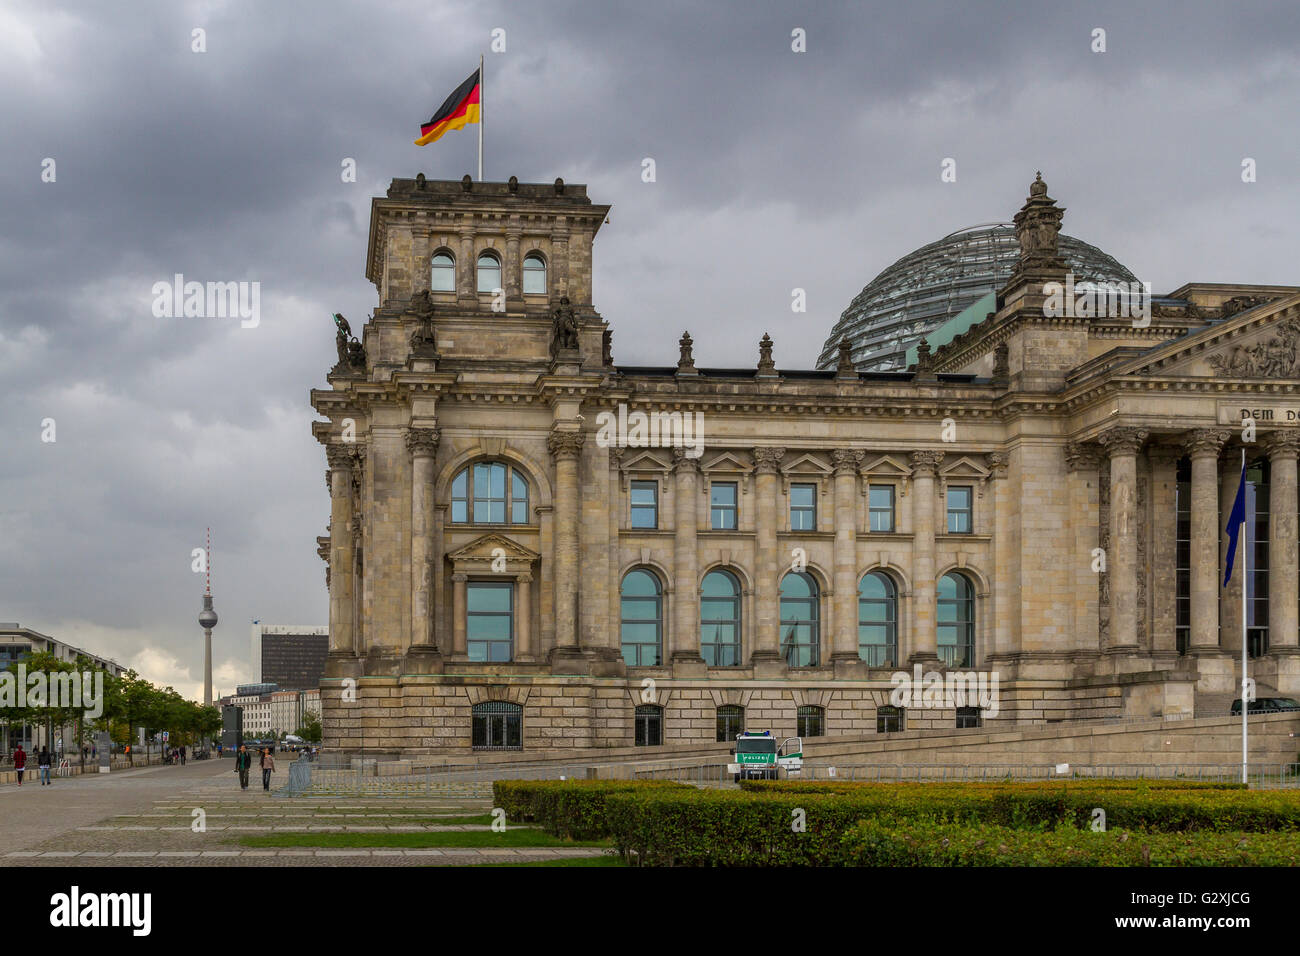 El edificio Reichstag, que alberga el parlamento alemán o el parlamento alemán con una gran cúpula de vidrio diseñada por Sir Norman Foster Foto de stock